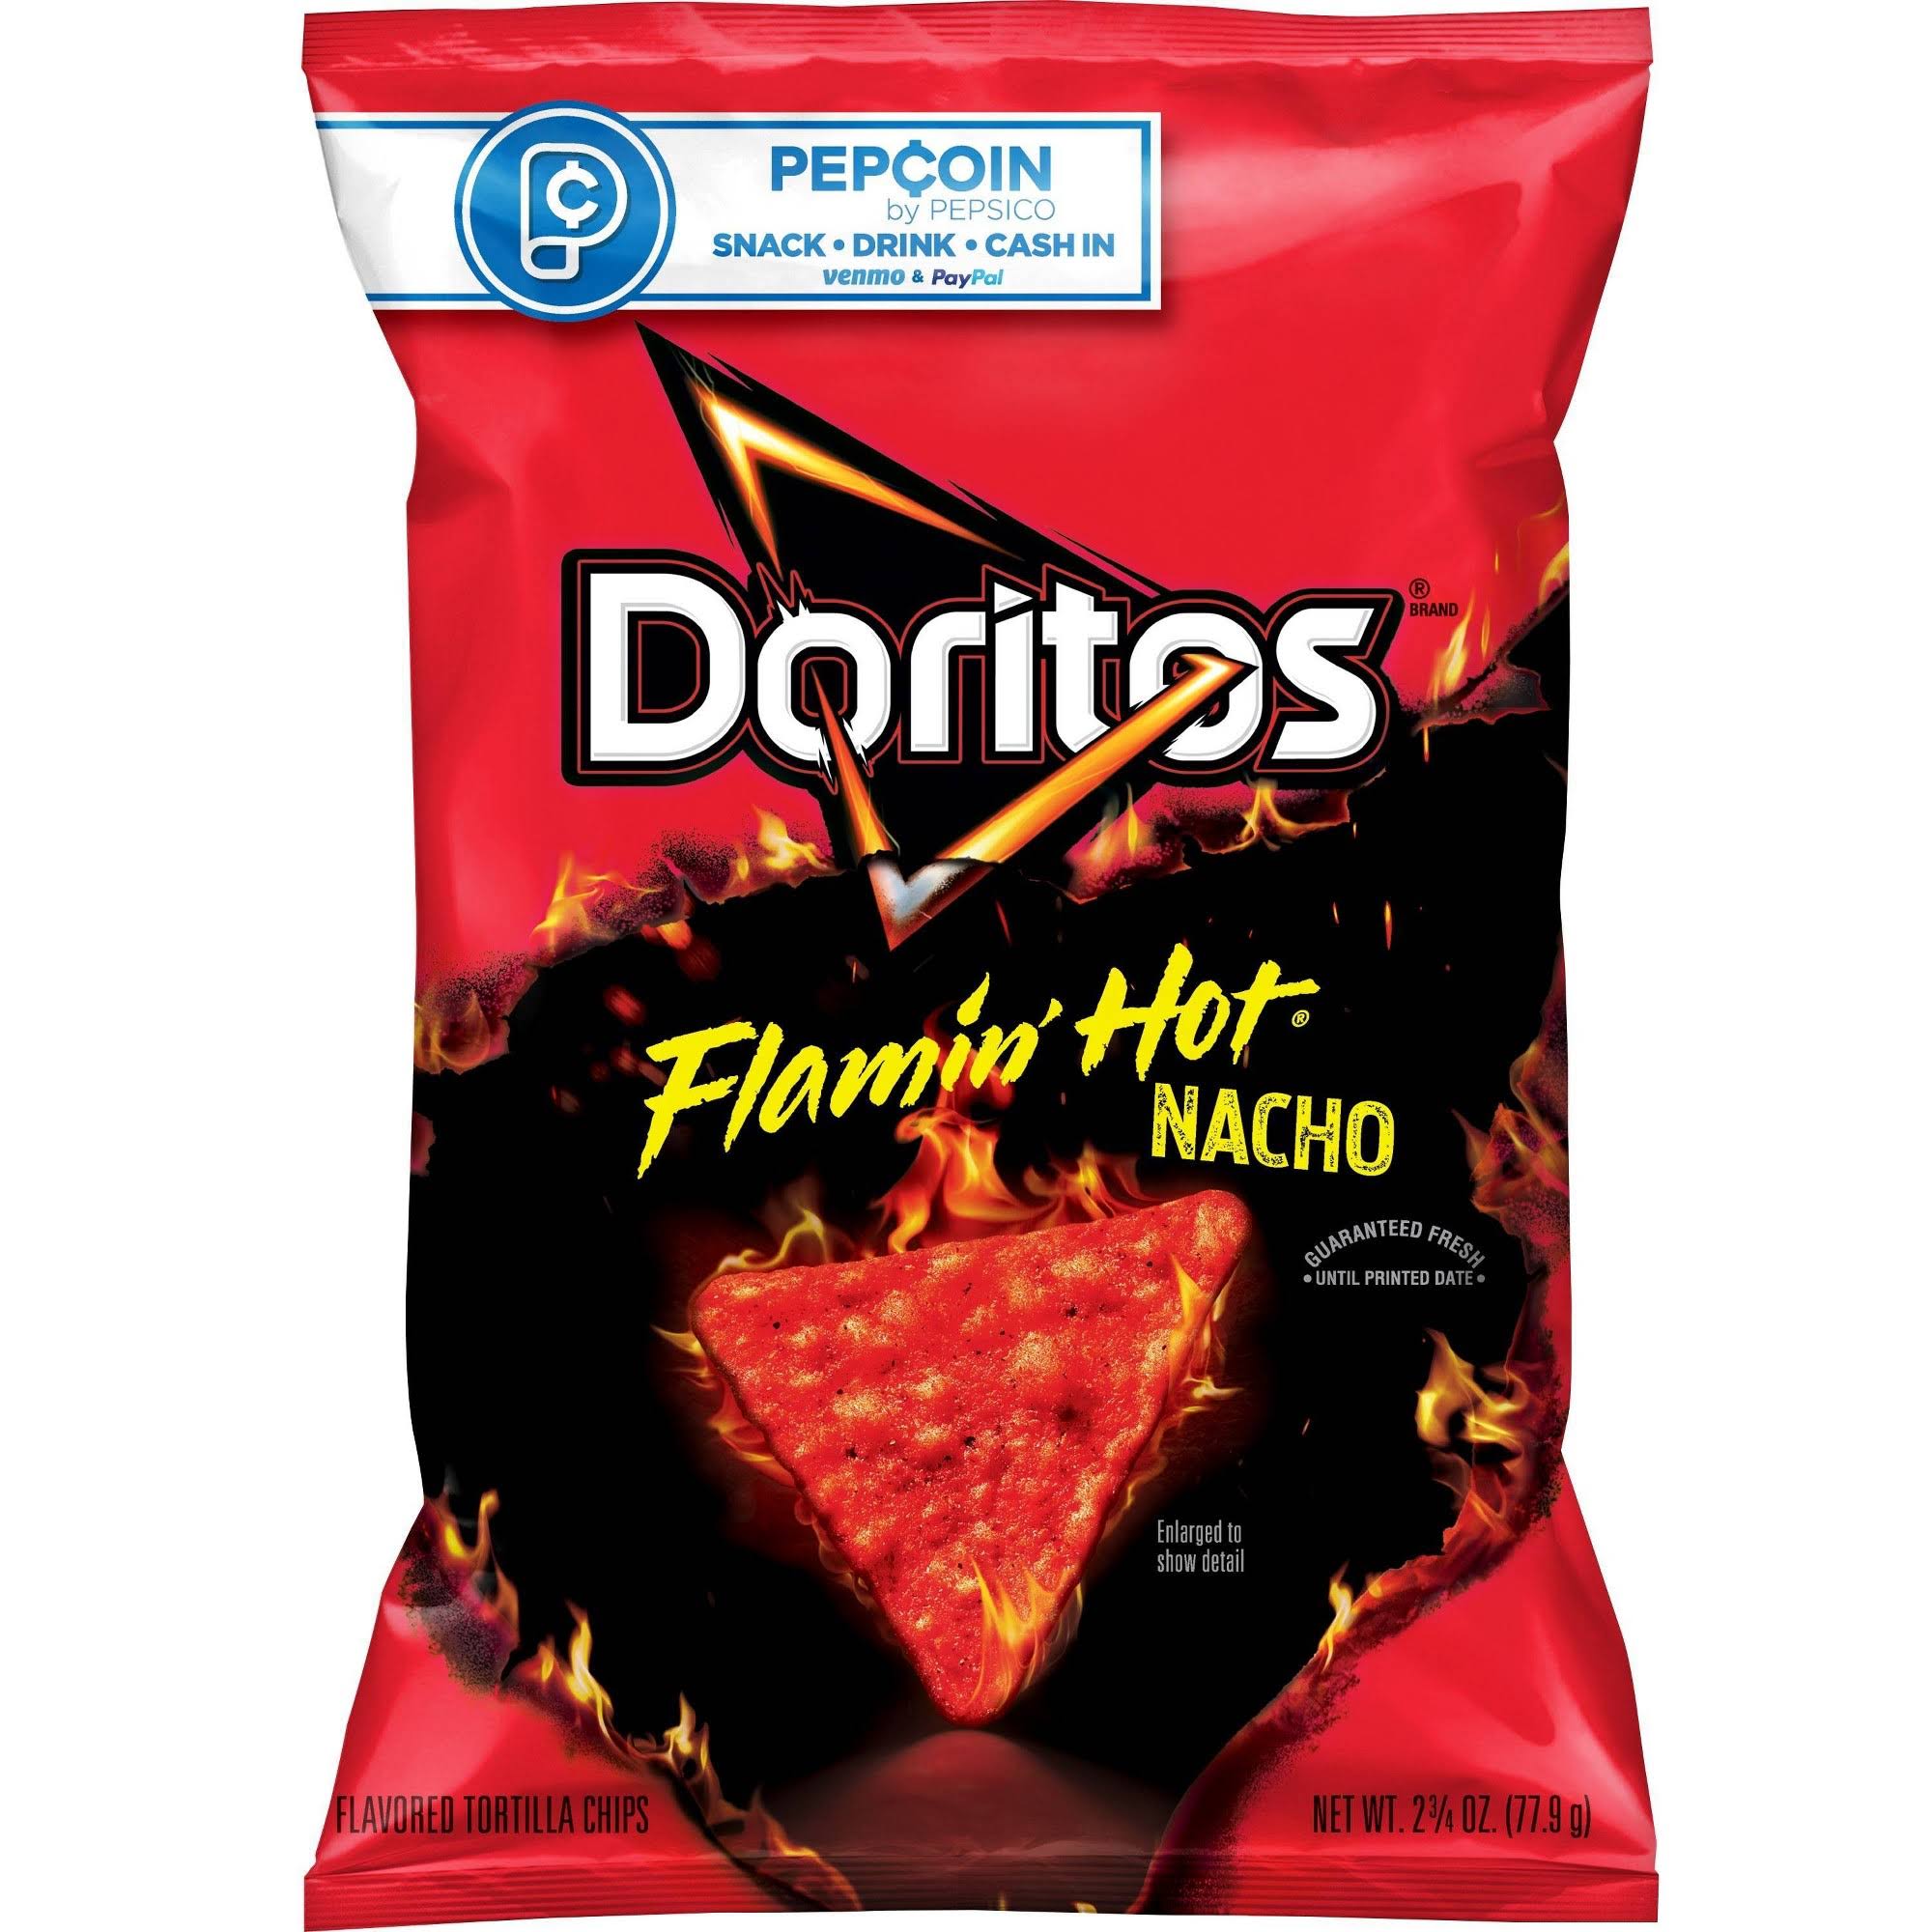 Doritos Tortilla Chips, Flamin Hot Nacho - 2.75 oz